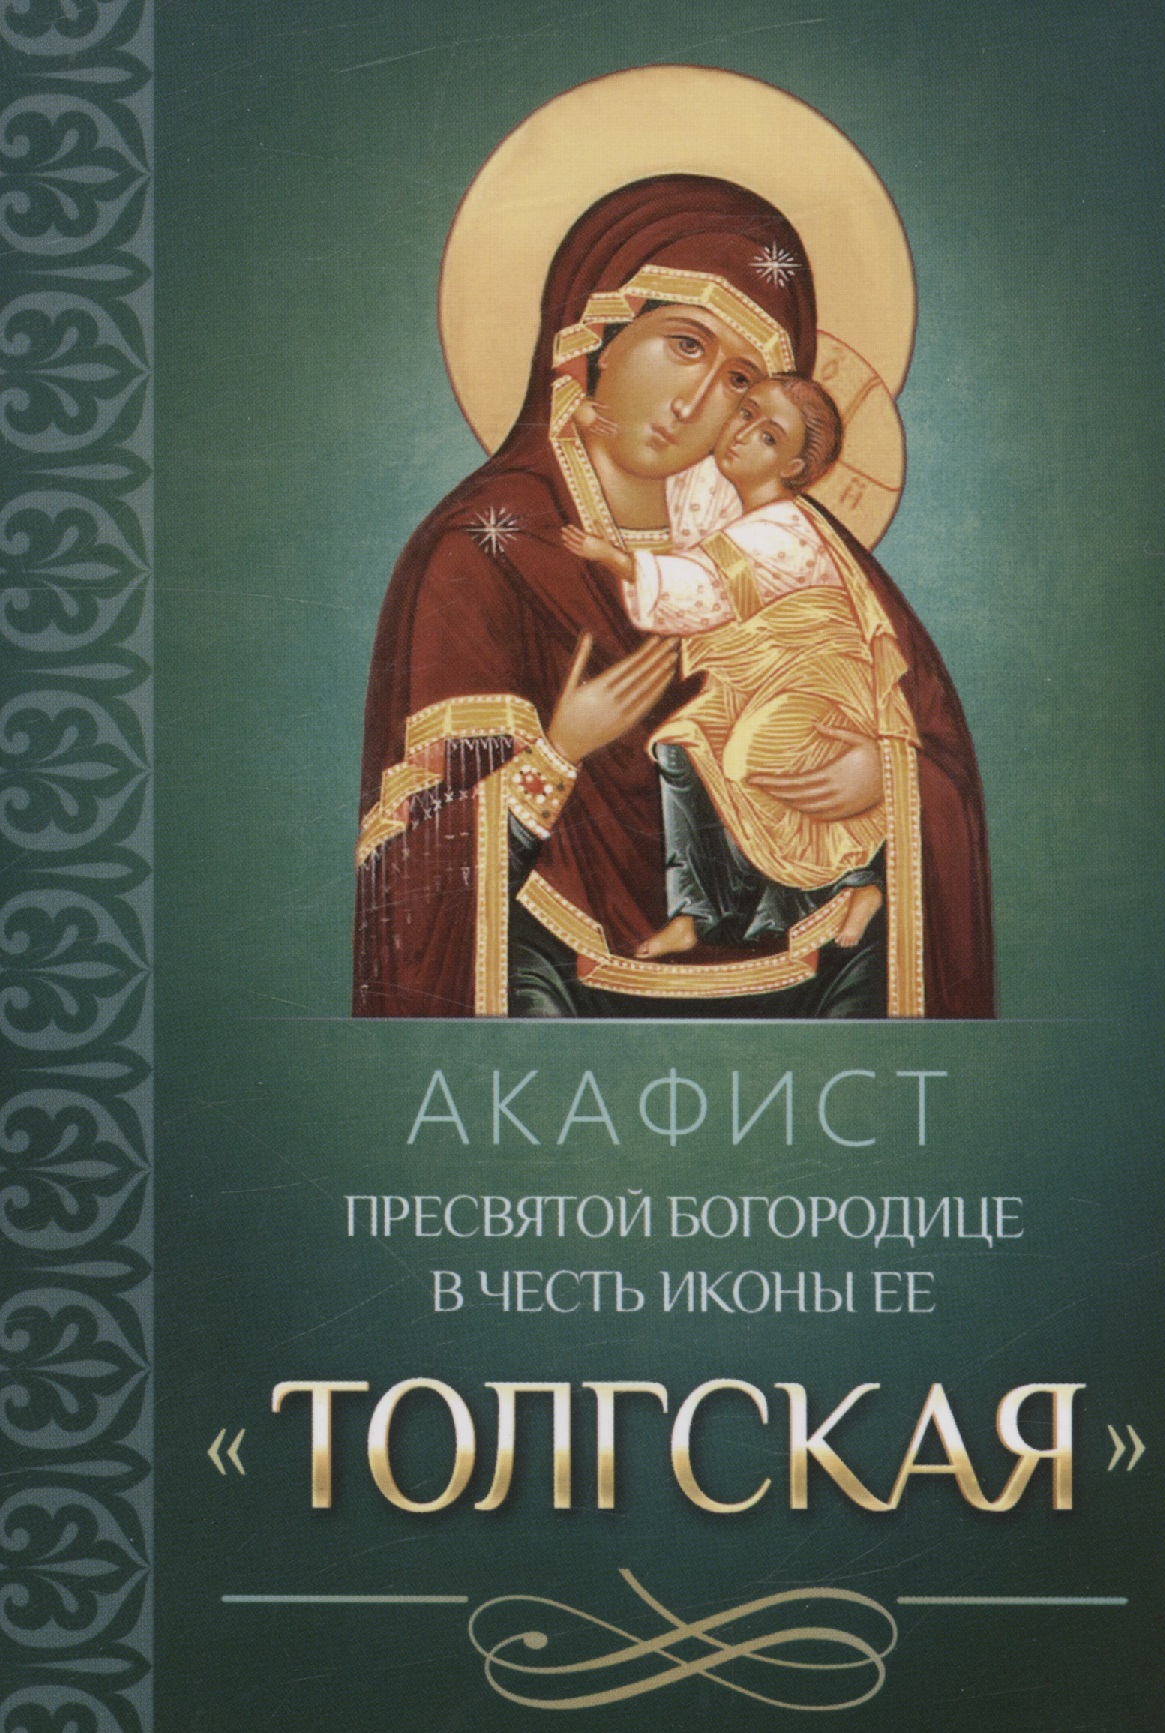 Сегодня акафист пресвятой богородице. Акафист Толгской иконе Божией матери. Толгская икона Божией матери. Акафист Толгской иконе. Молитва Пресвятой Богородице Толгской.